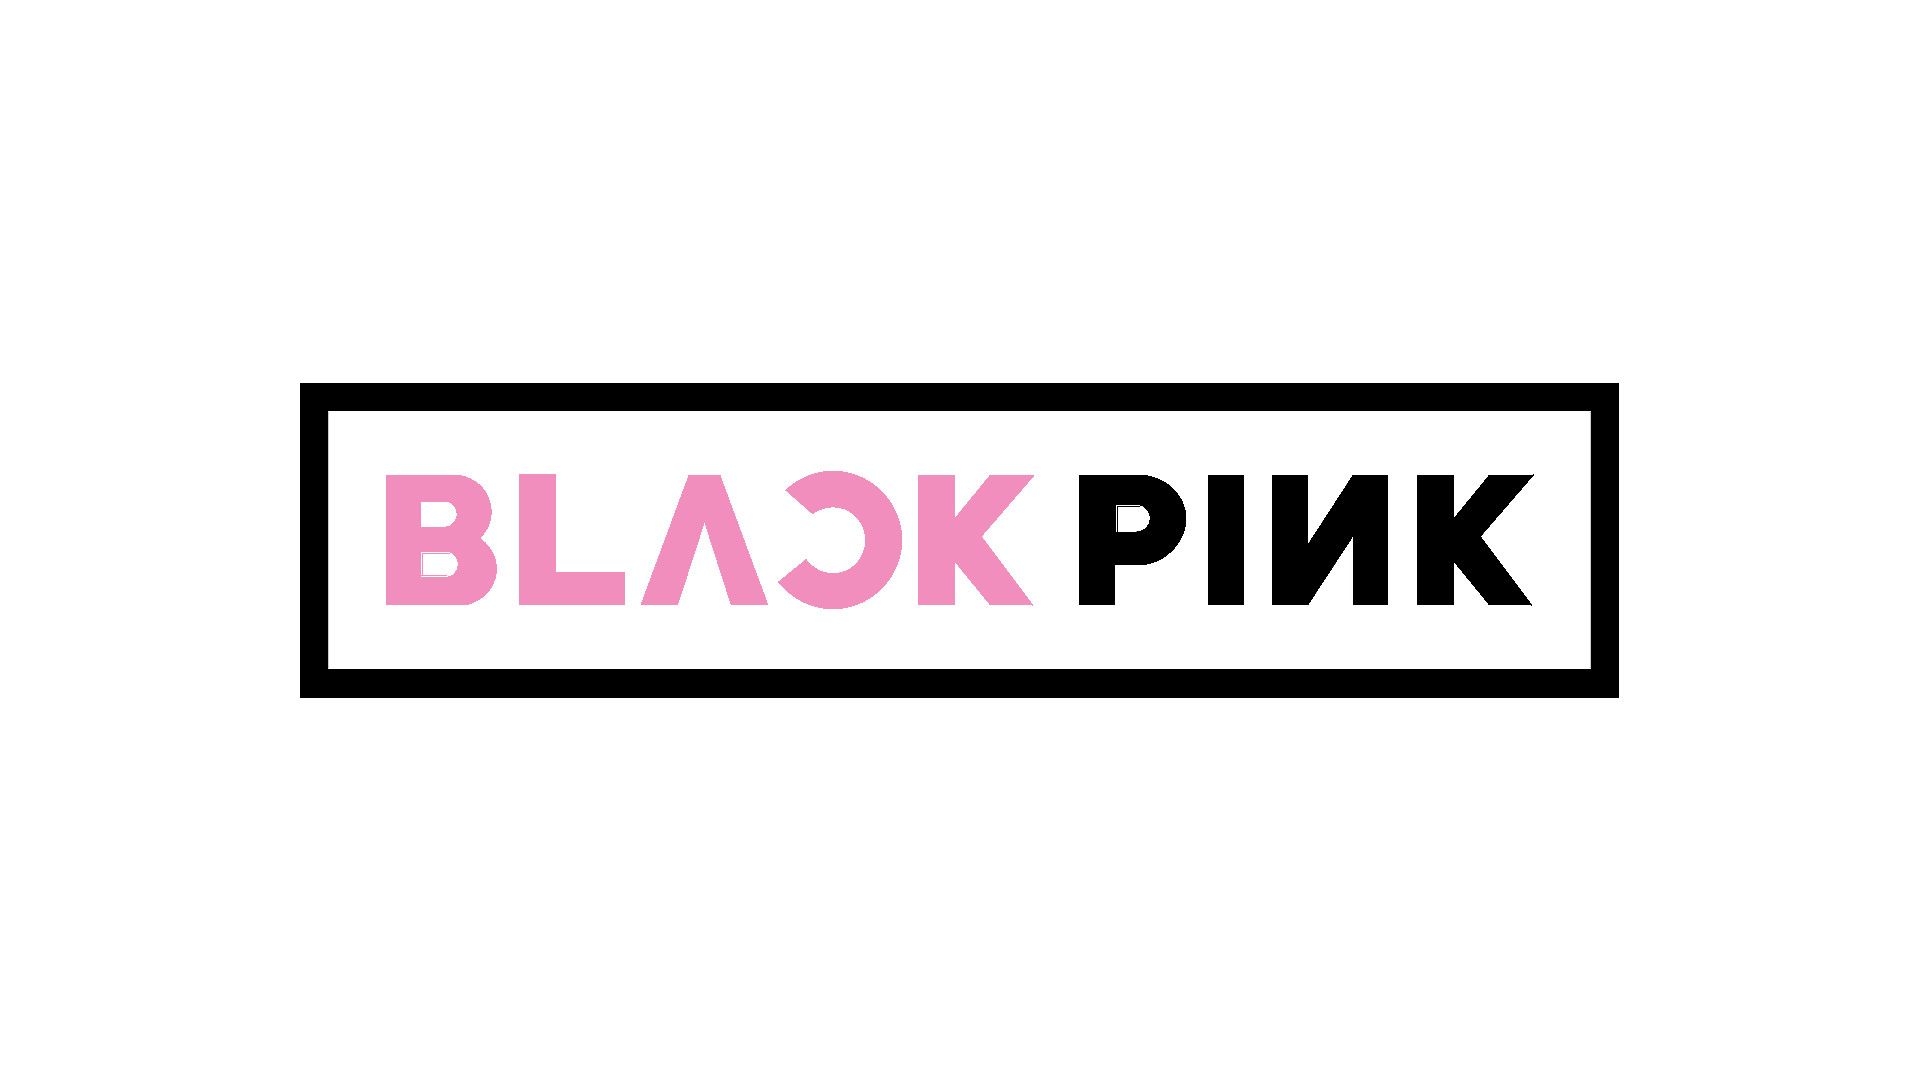 Blackpink logo desktop background wallpaper